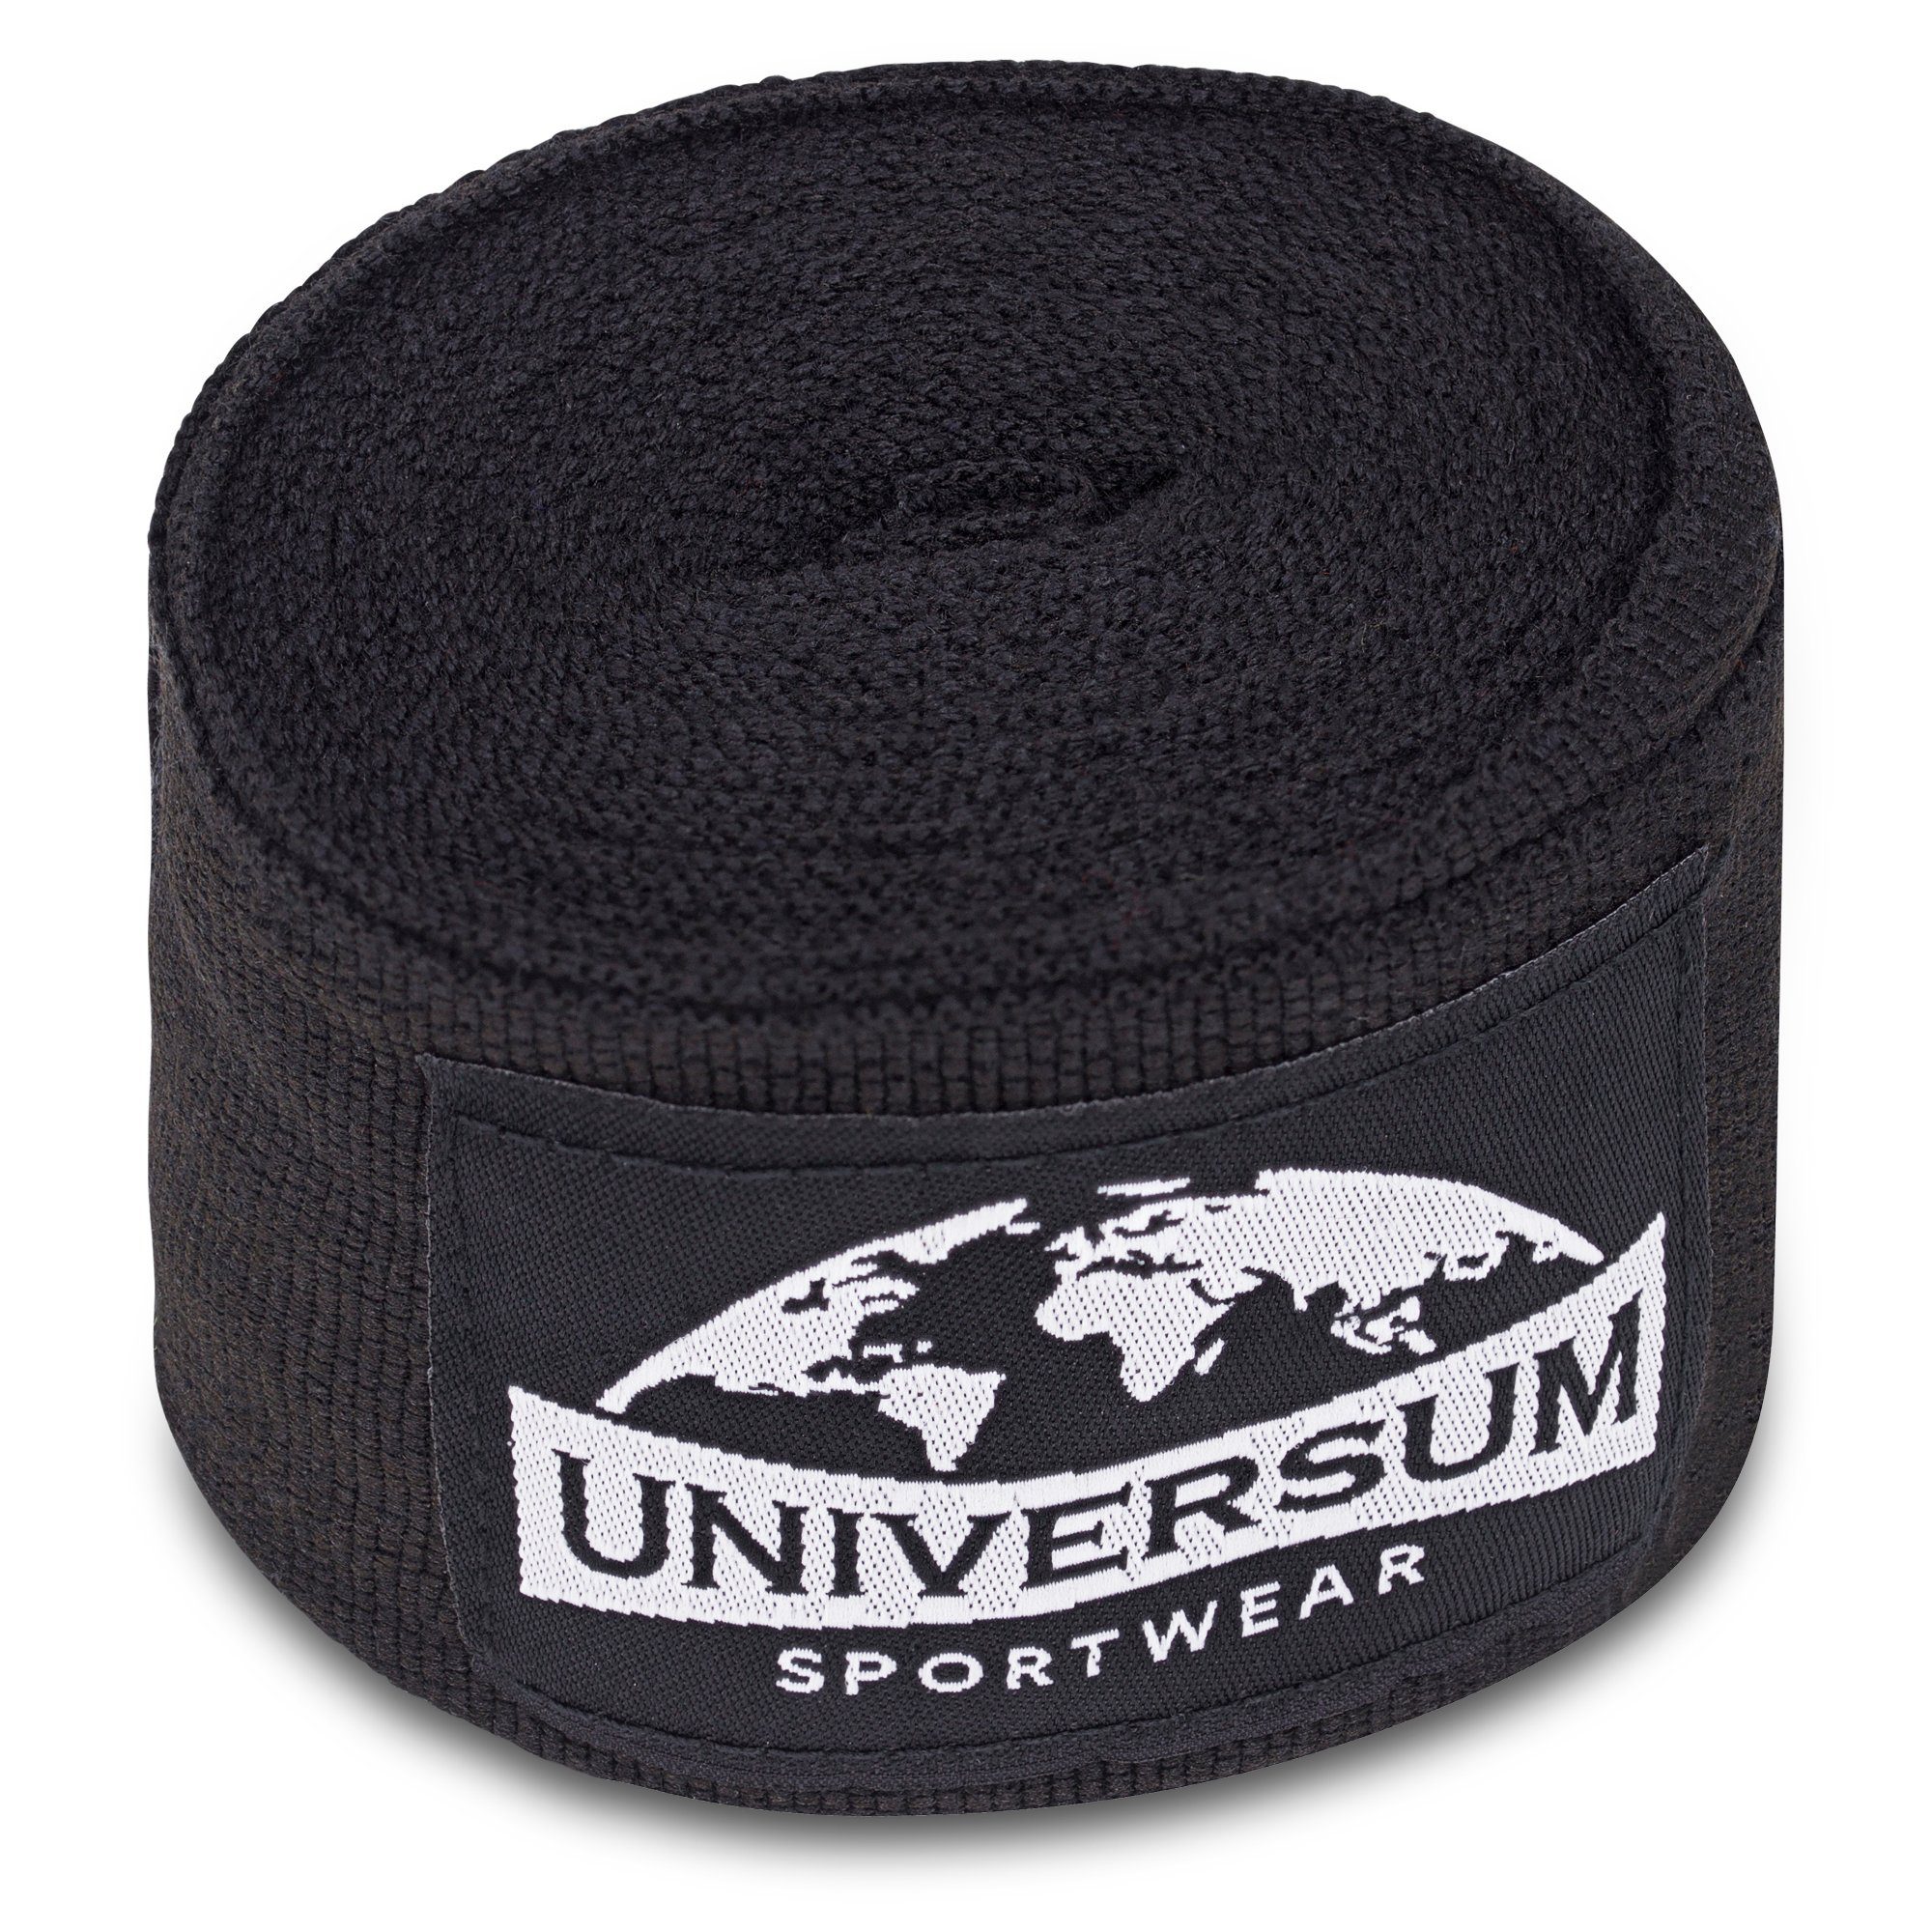 Sportwear langen mit Universum Klettverschluss Schwarz-Weiß Handgelenk Boxbandagen Bandage,